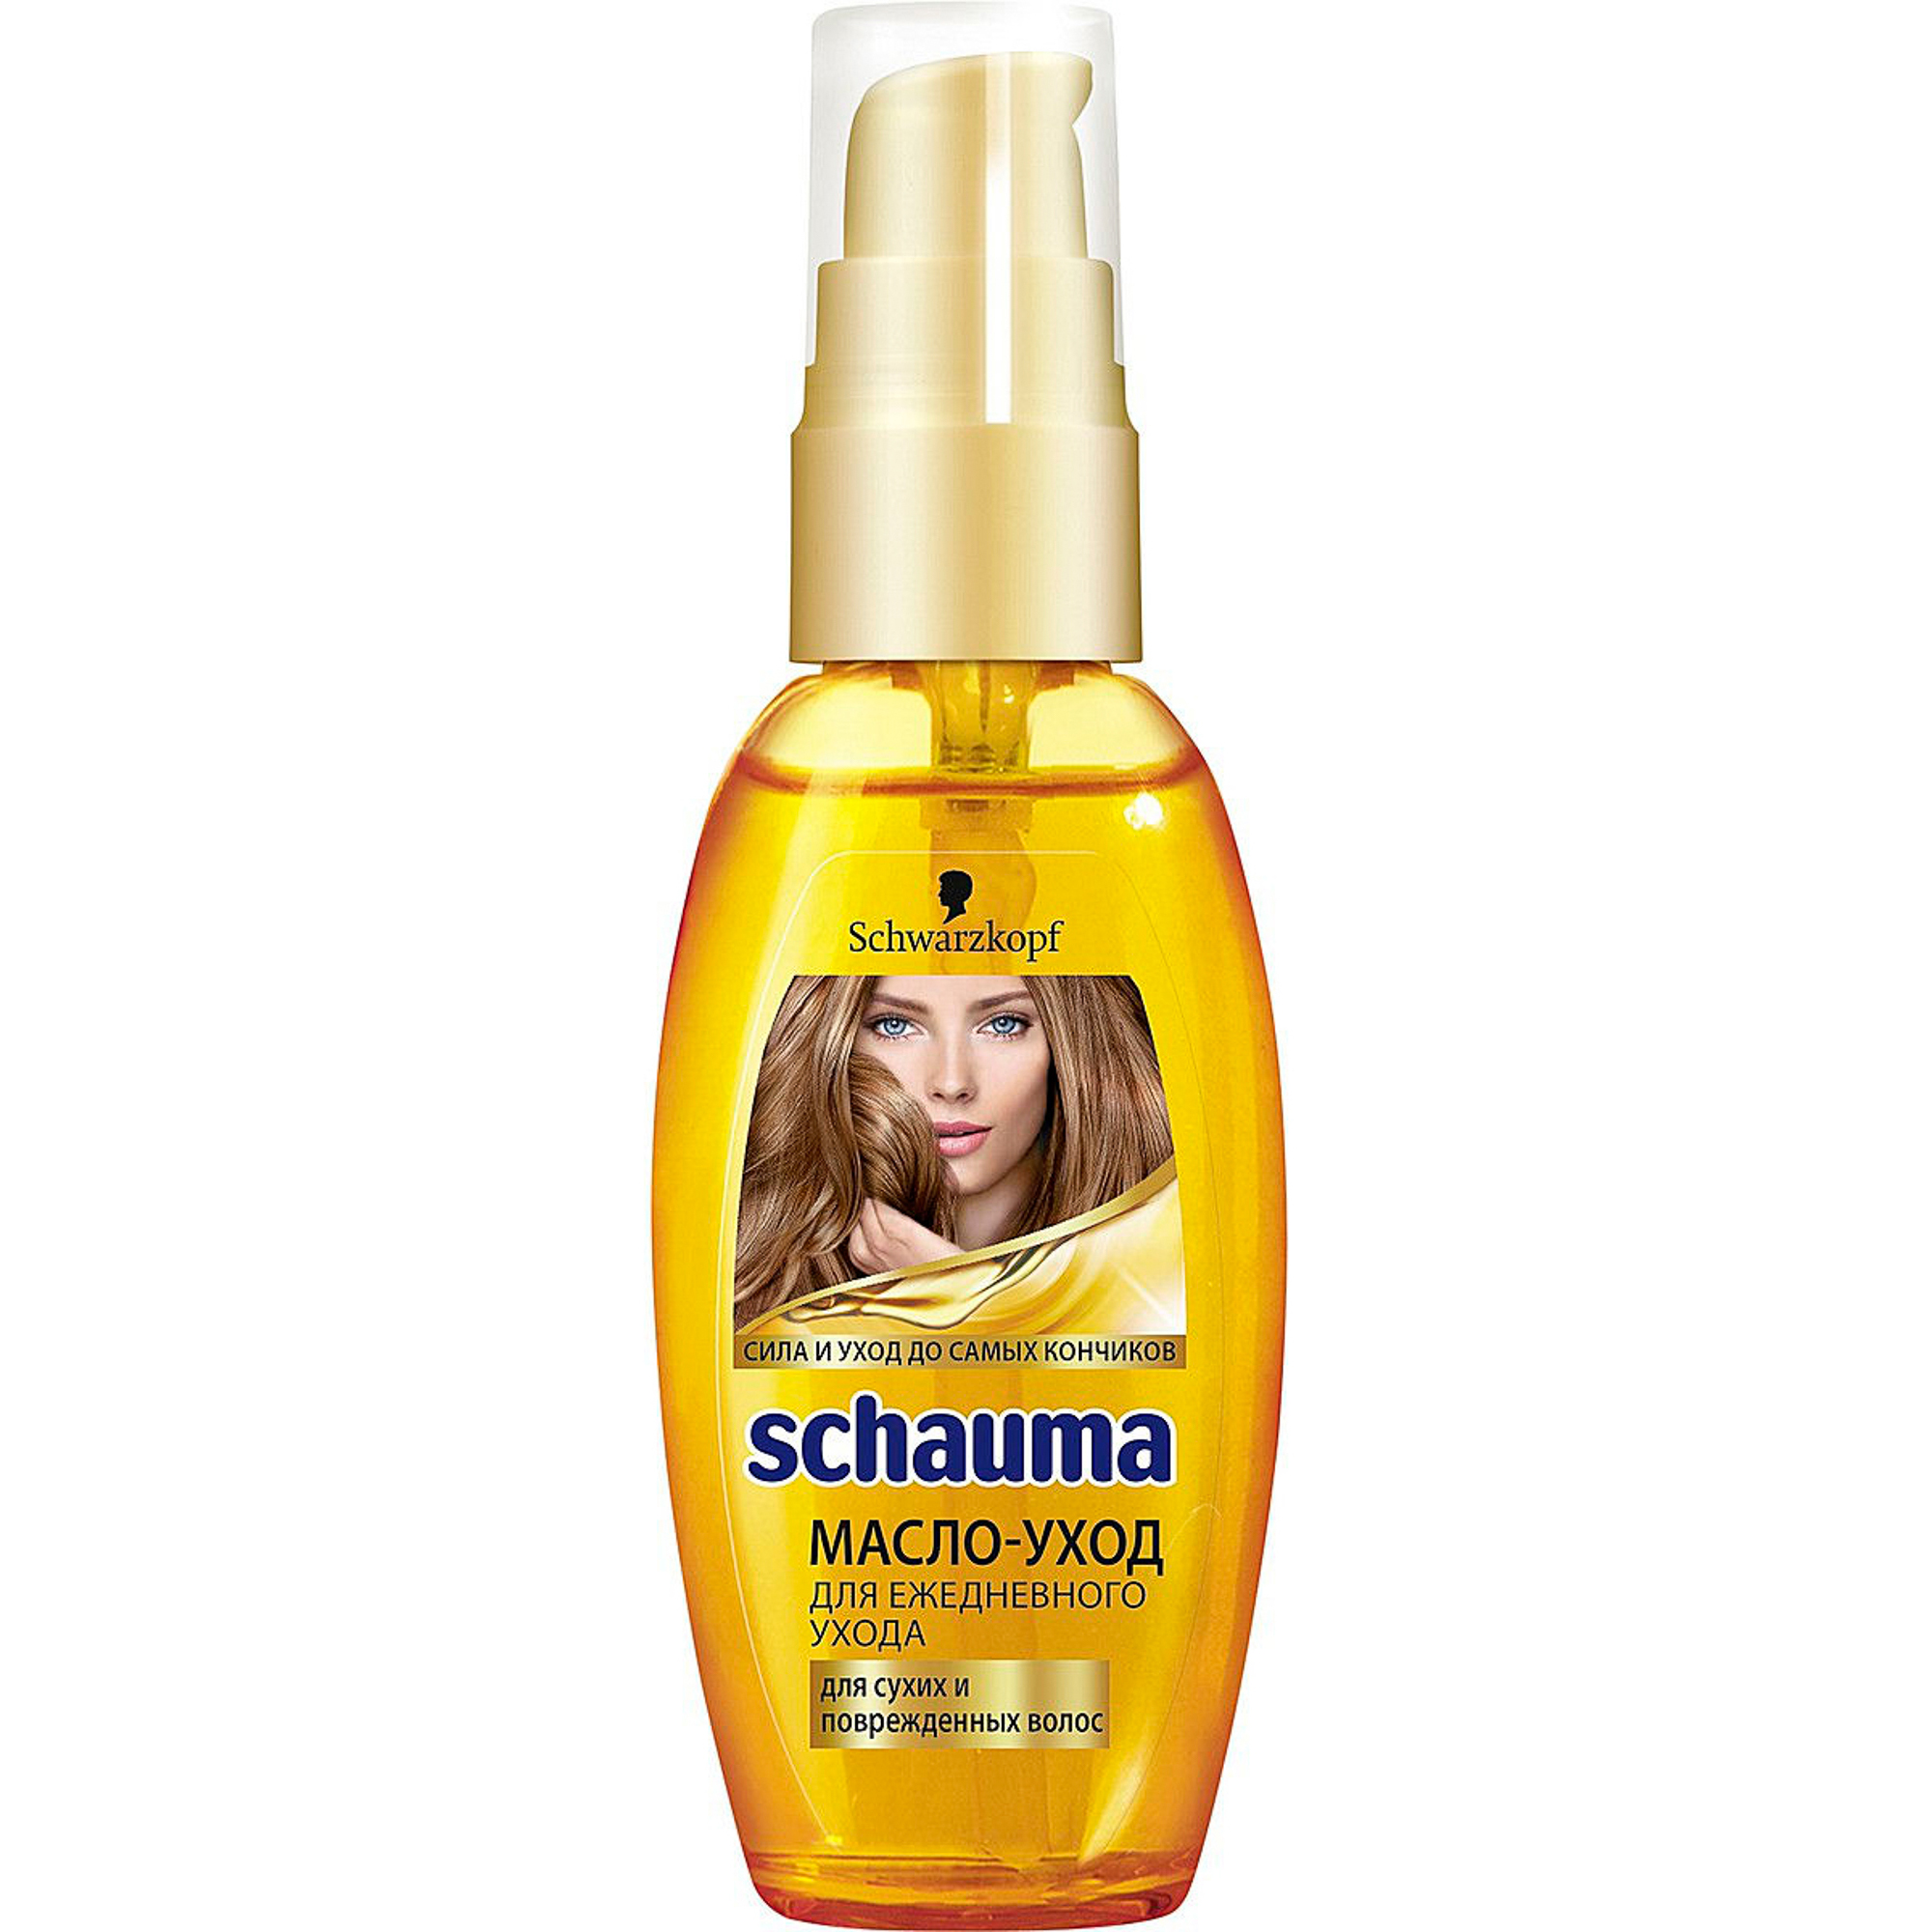 Schauma масло уход для ежедневного ухода для сухих и поврежденных волос